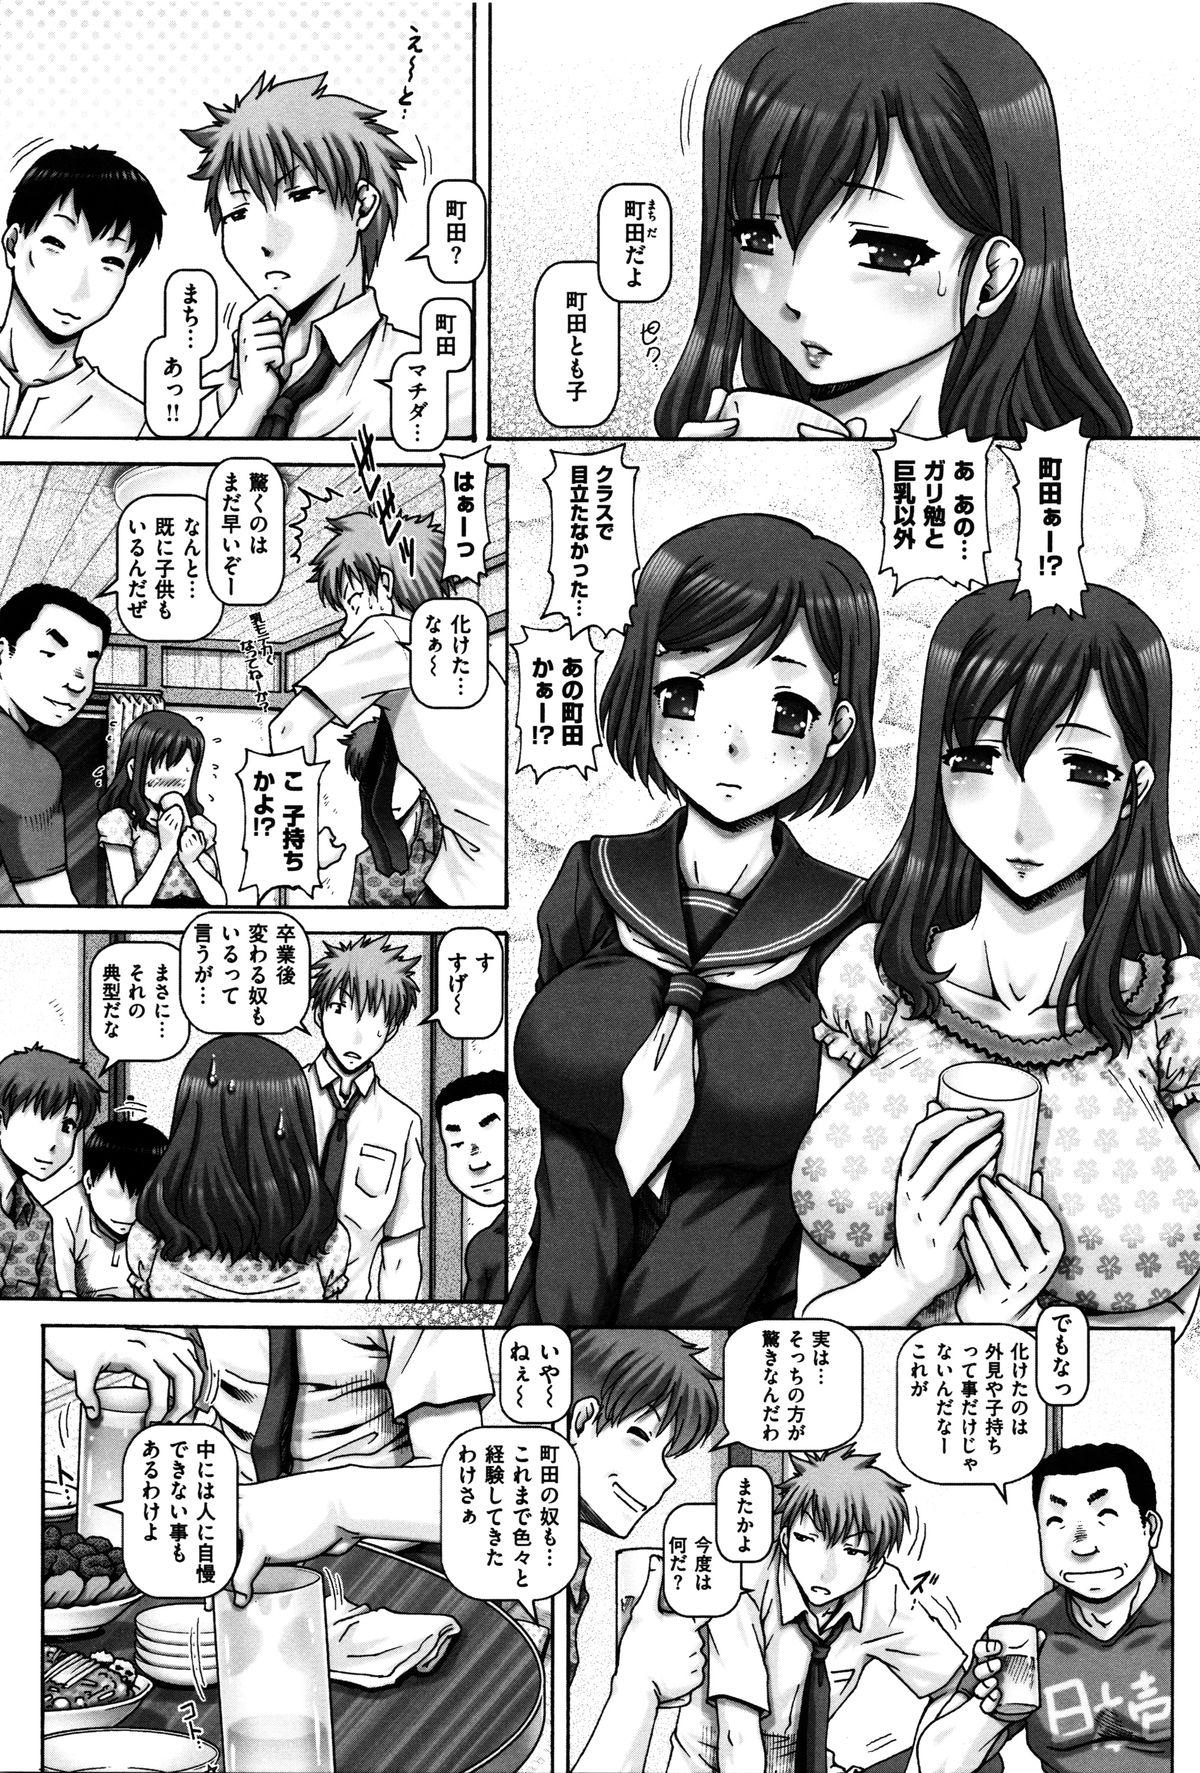 English Kachiku Ane - chapter 1,5,7 & 9 Arabe - Page 4